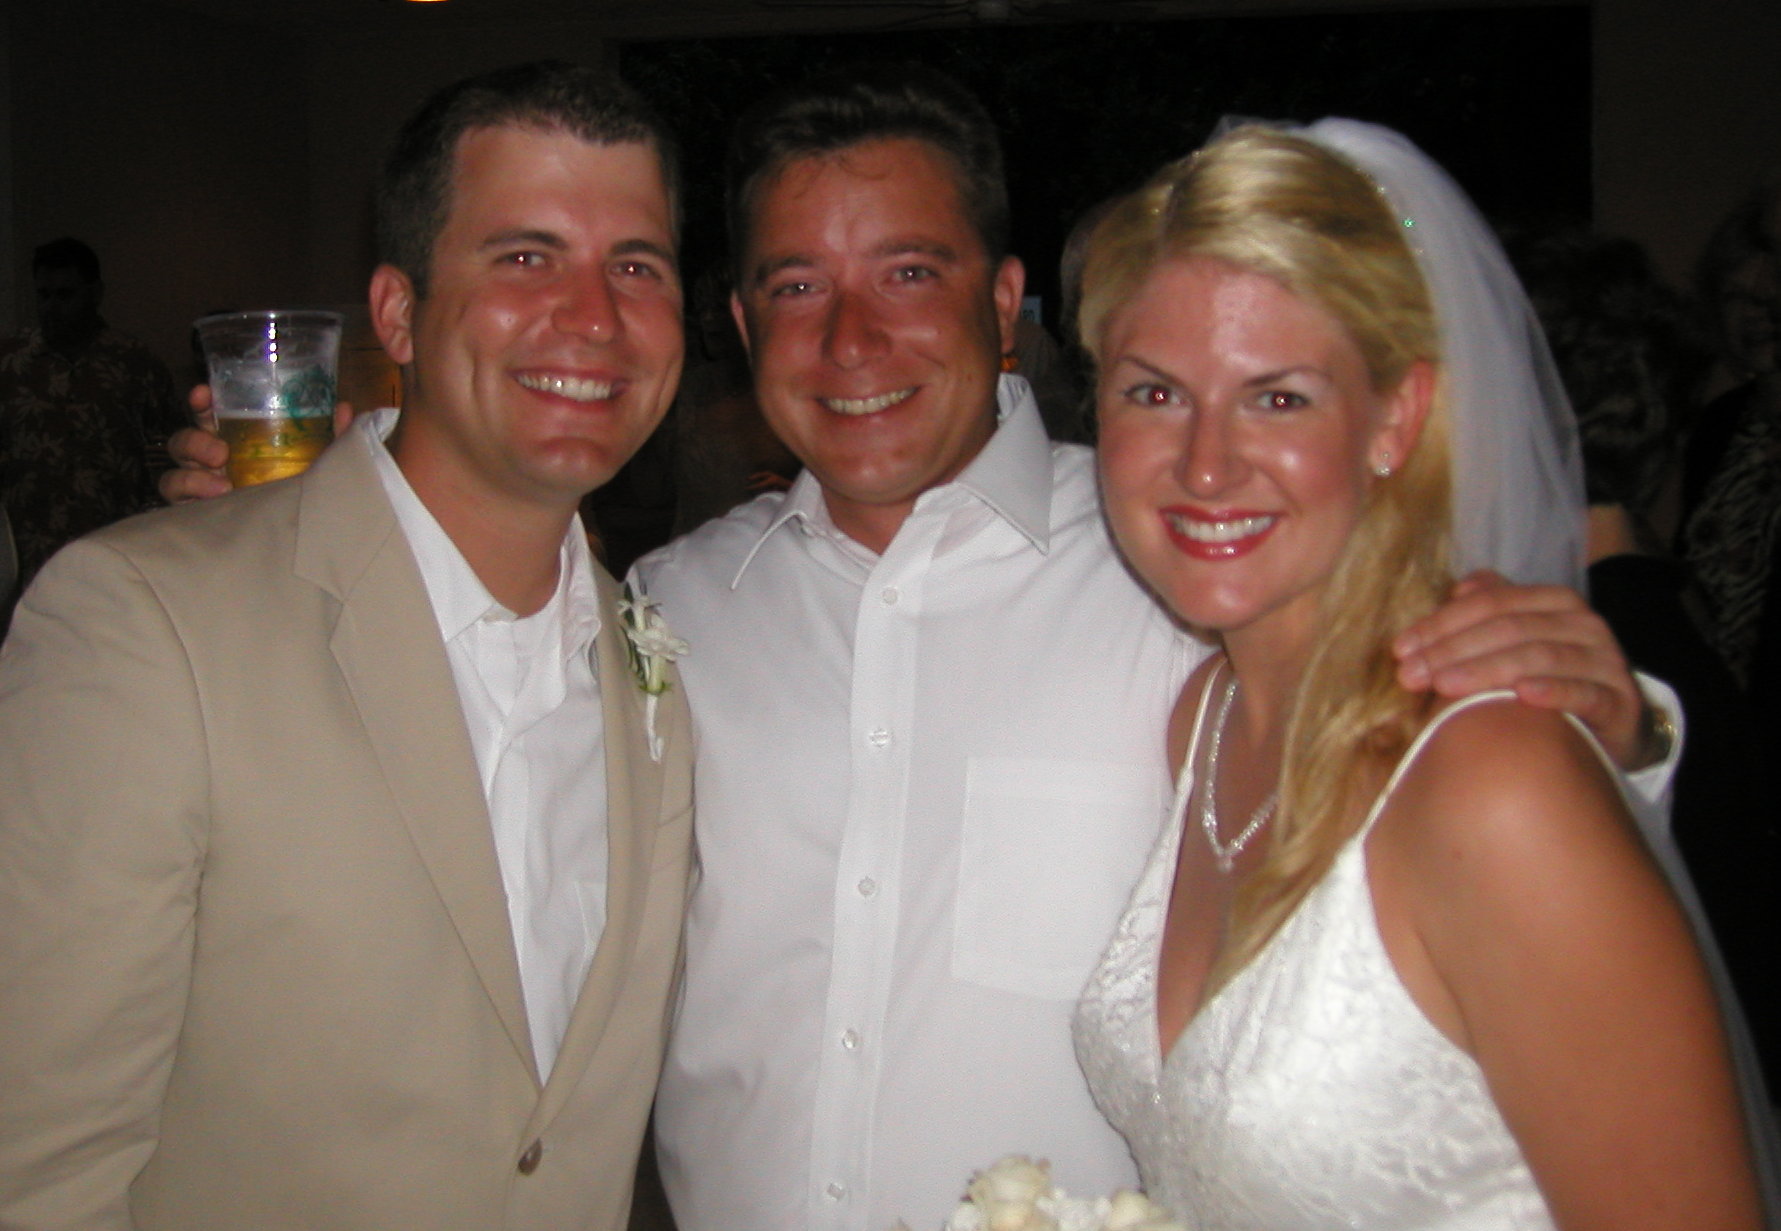 Dustin Martin & Emily Nokes, Sept 2003, Amelia's Island, Florida